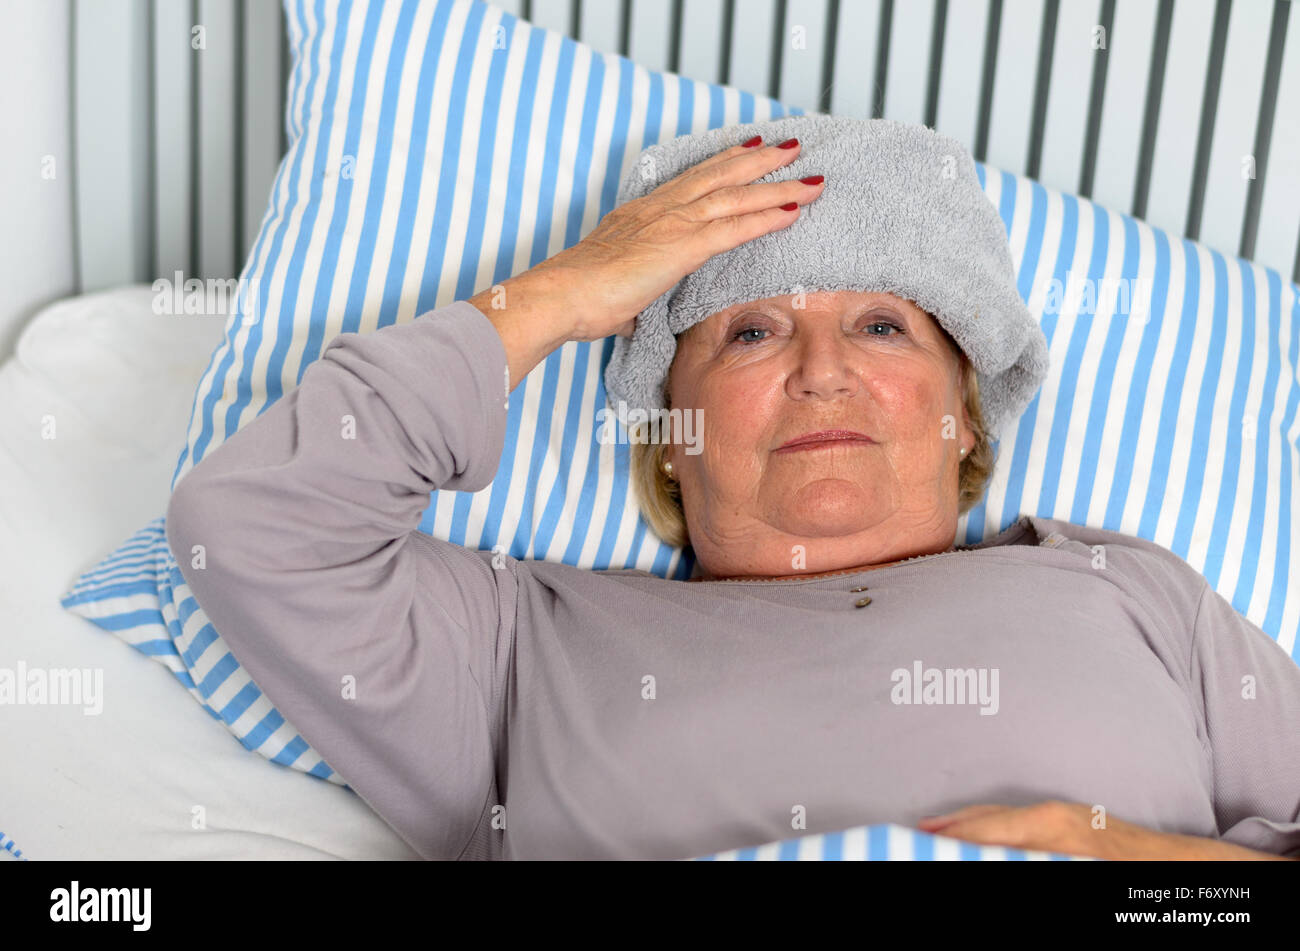 Полотенце на лоб. Женщина с полотенцем на лбу. Больная женщина лежит с полотенцем на голове. Больной с полотенцем на лбу фото. Лежит с полотенцем на лбу.